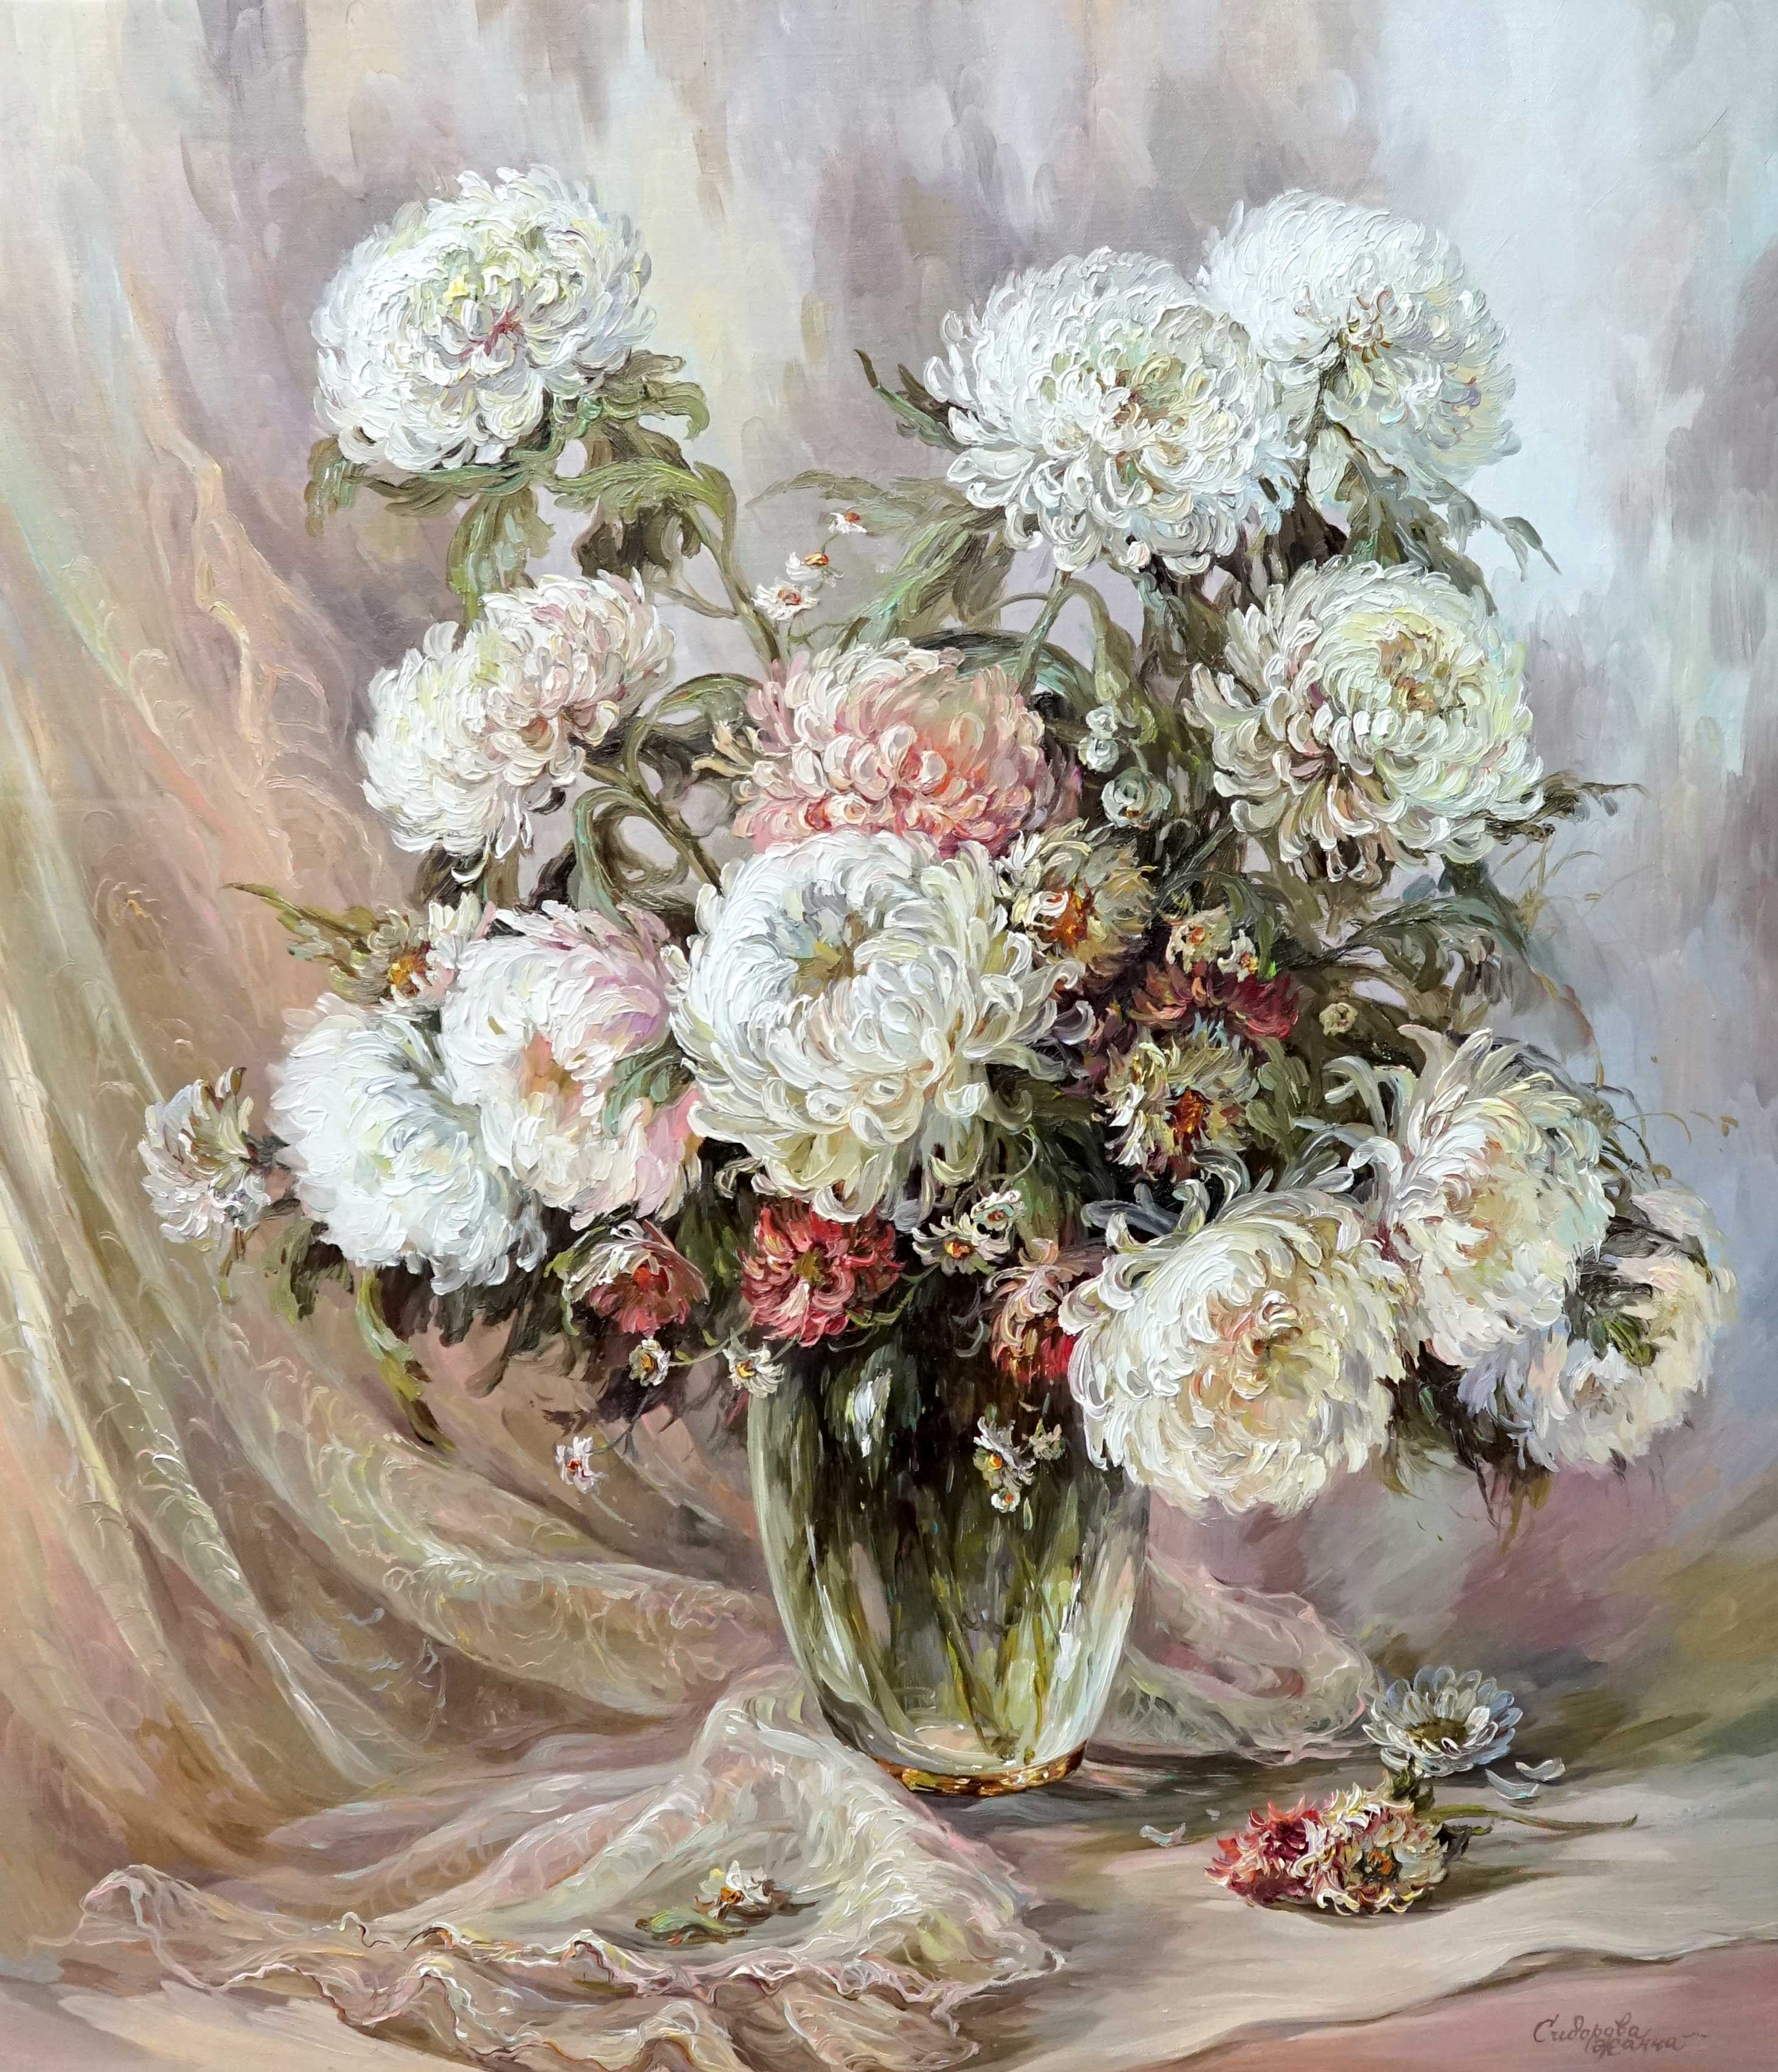 Chrysanthemum - 1, Zhanna Sidorova, Buy the painting Oil